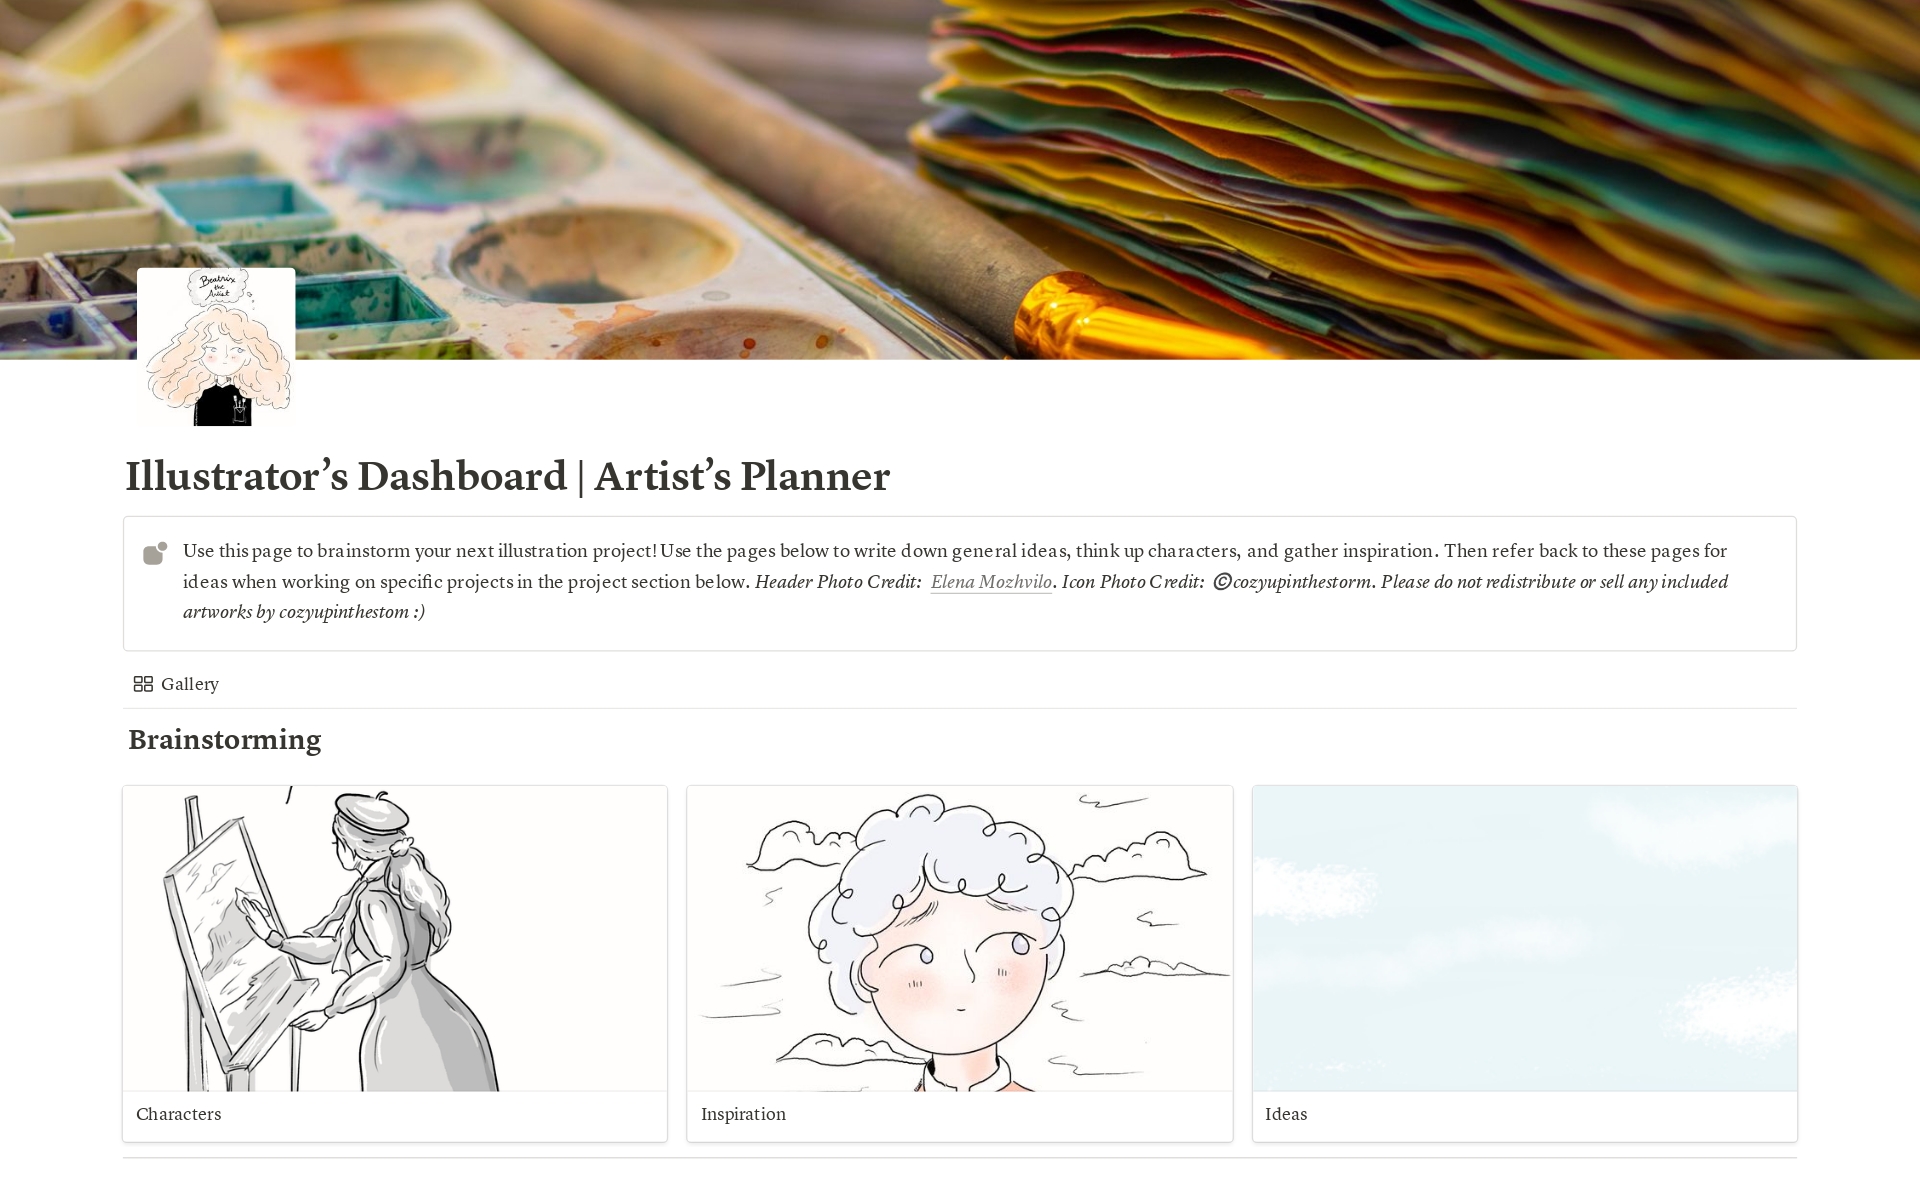 En förhandsgranskning av mallen för Illustrator's Dashboard | Artist's Planner